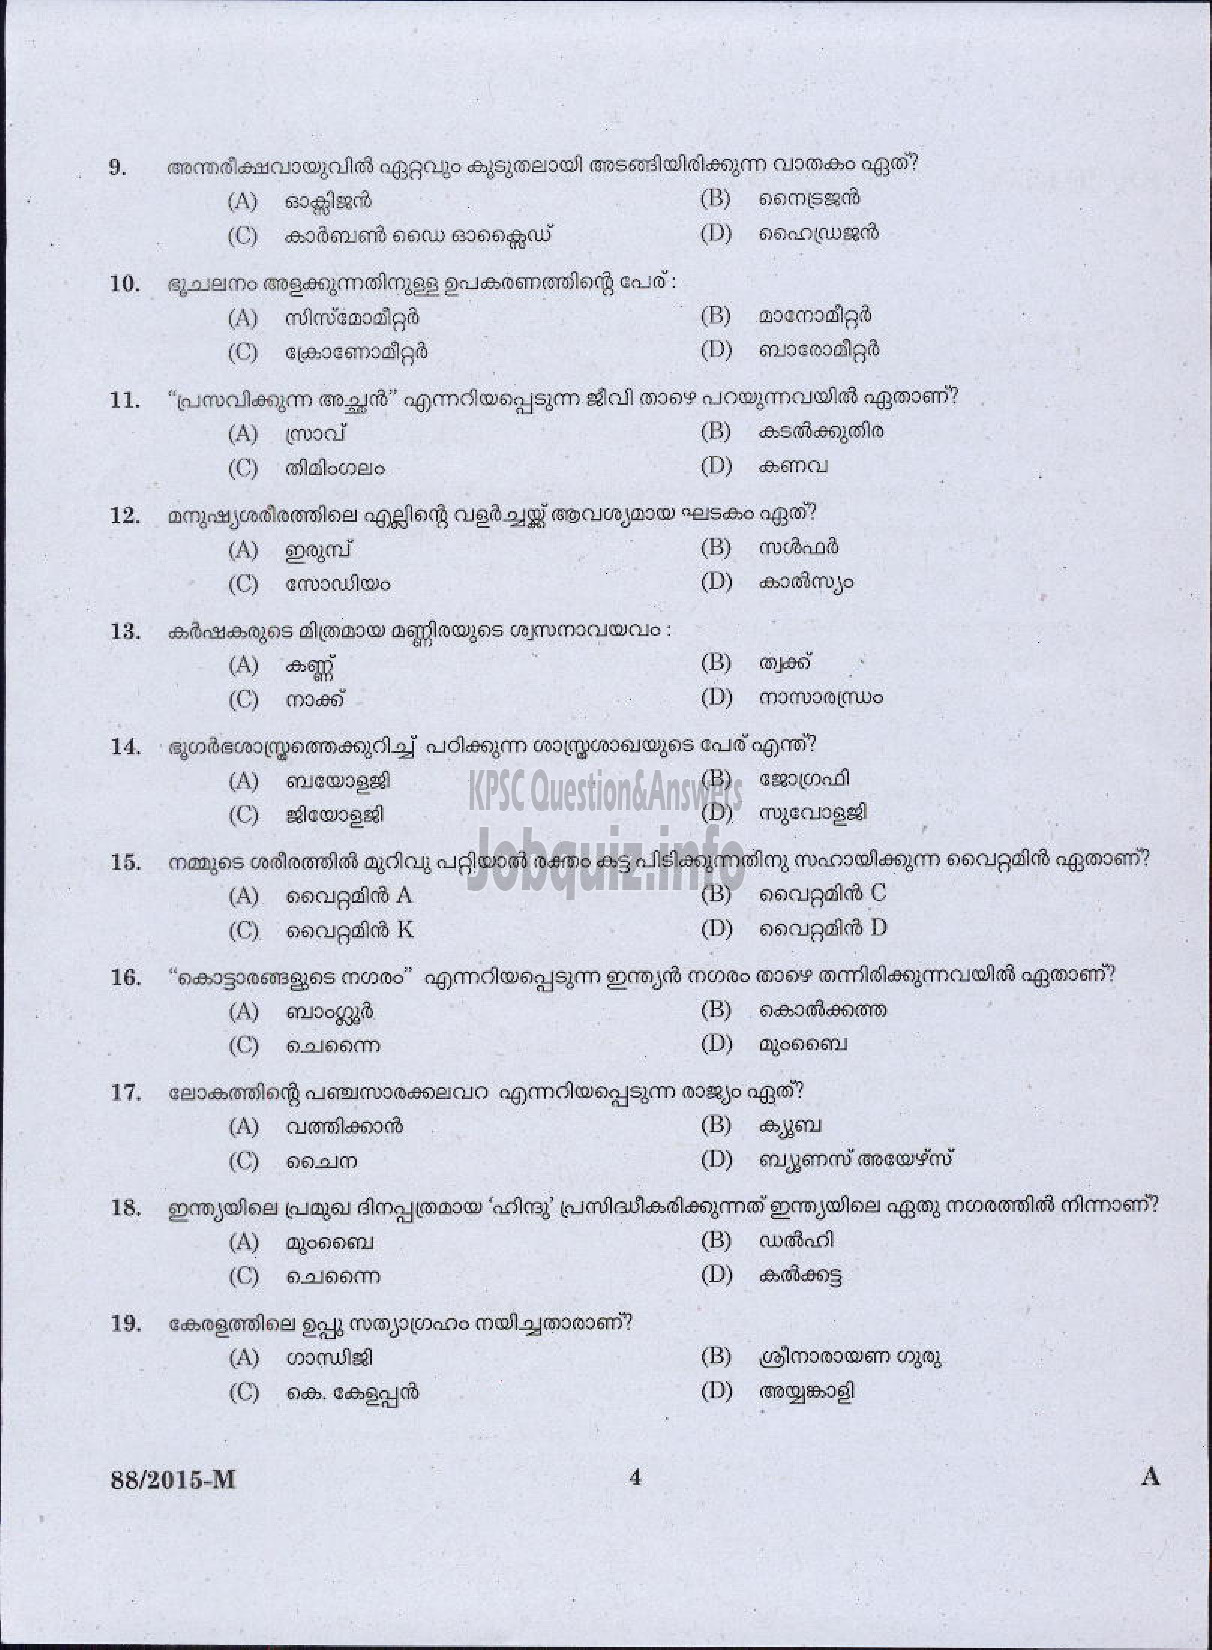 Kerala PSC Question Paper - DRIVER GRADE II LDV VARIOUS / DRIVER GR II / DRIVER LDV VARIOUS COMPANIES / CORPORATIONS-2